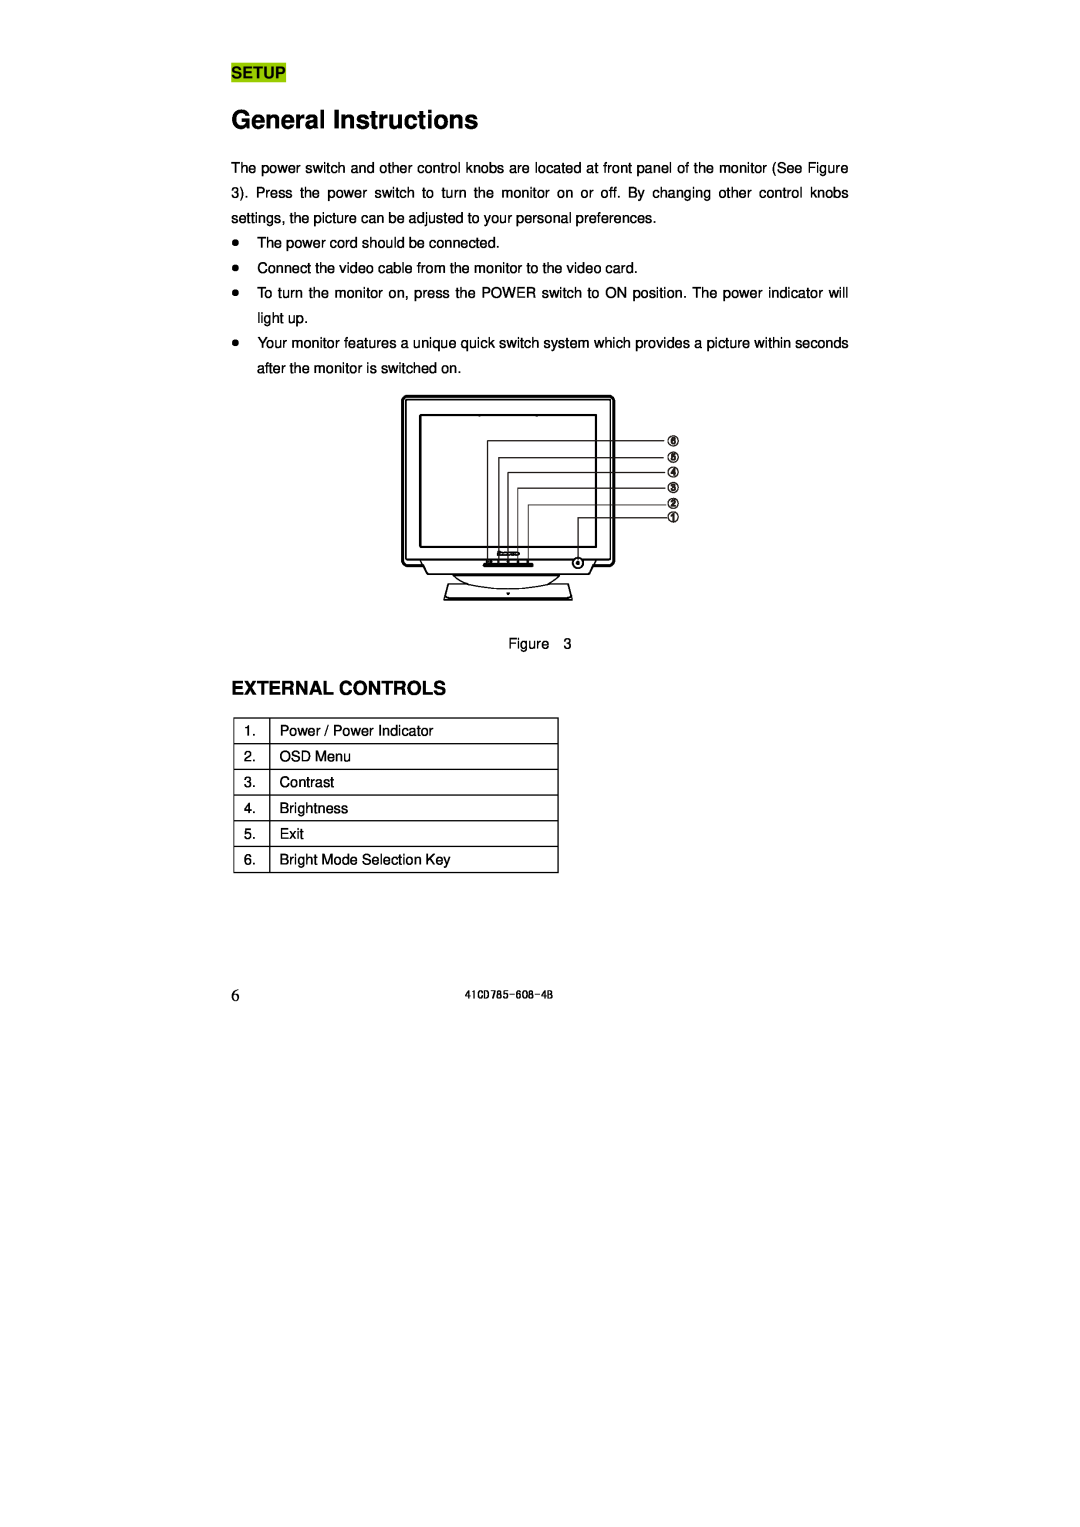 Lenovo LXH-GJ769F4 appendix General Instructions, External Controls, Setup 